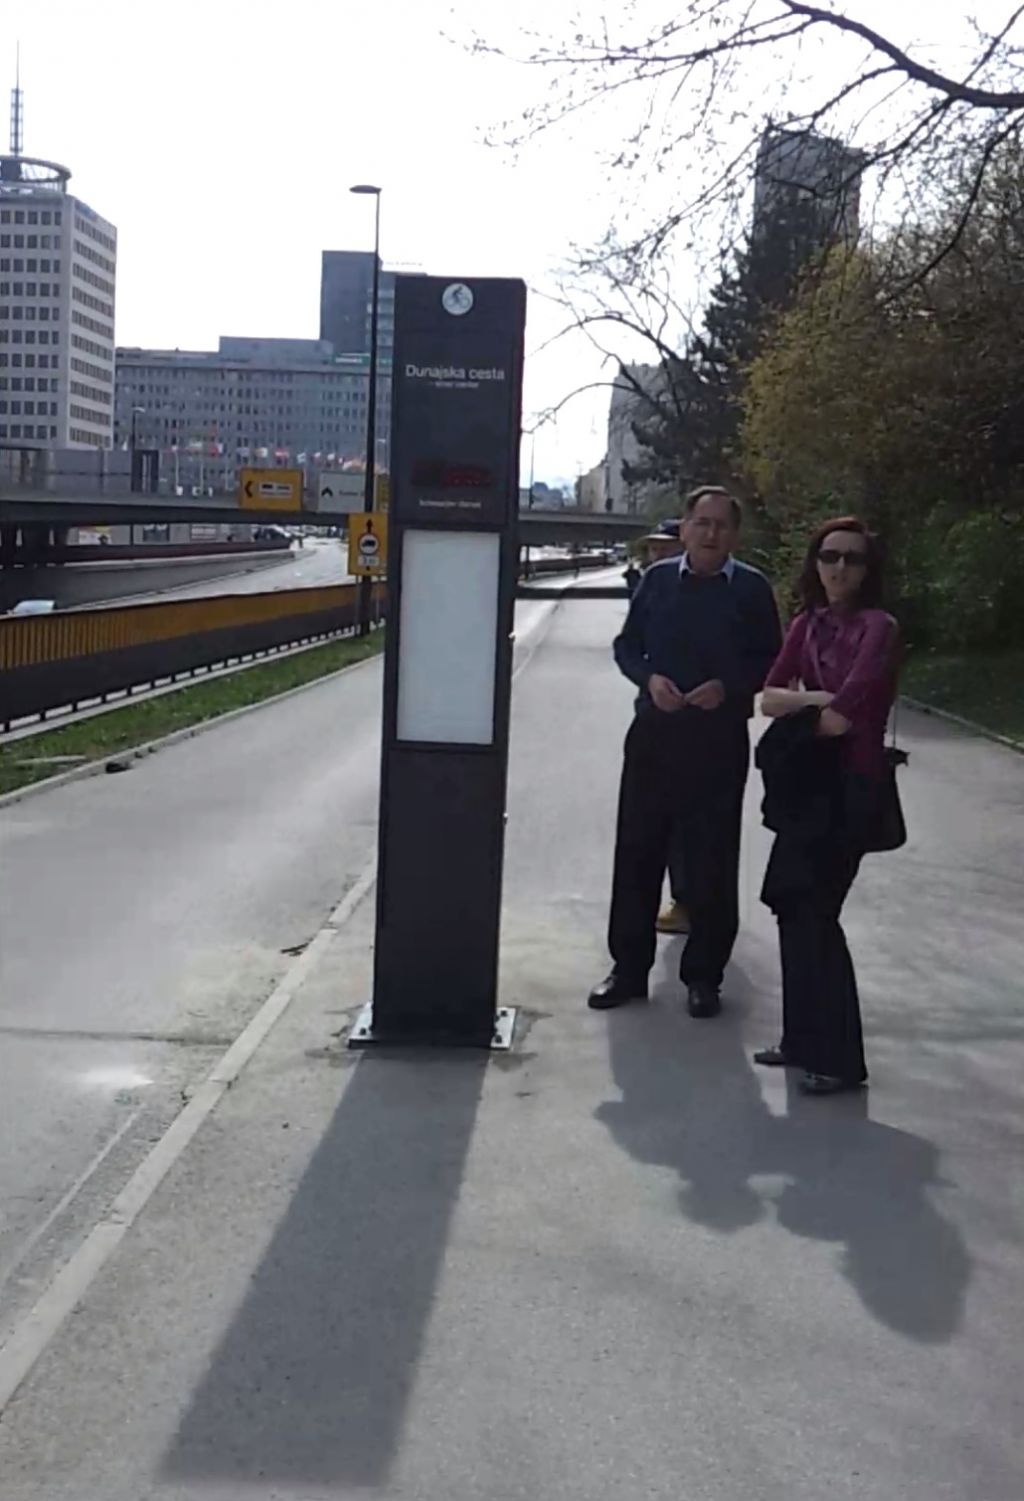 VIDEO: Po Ljubljani rastejo merilniki, podobni mariborskim radarjem